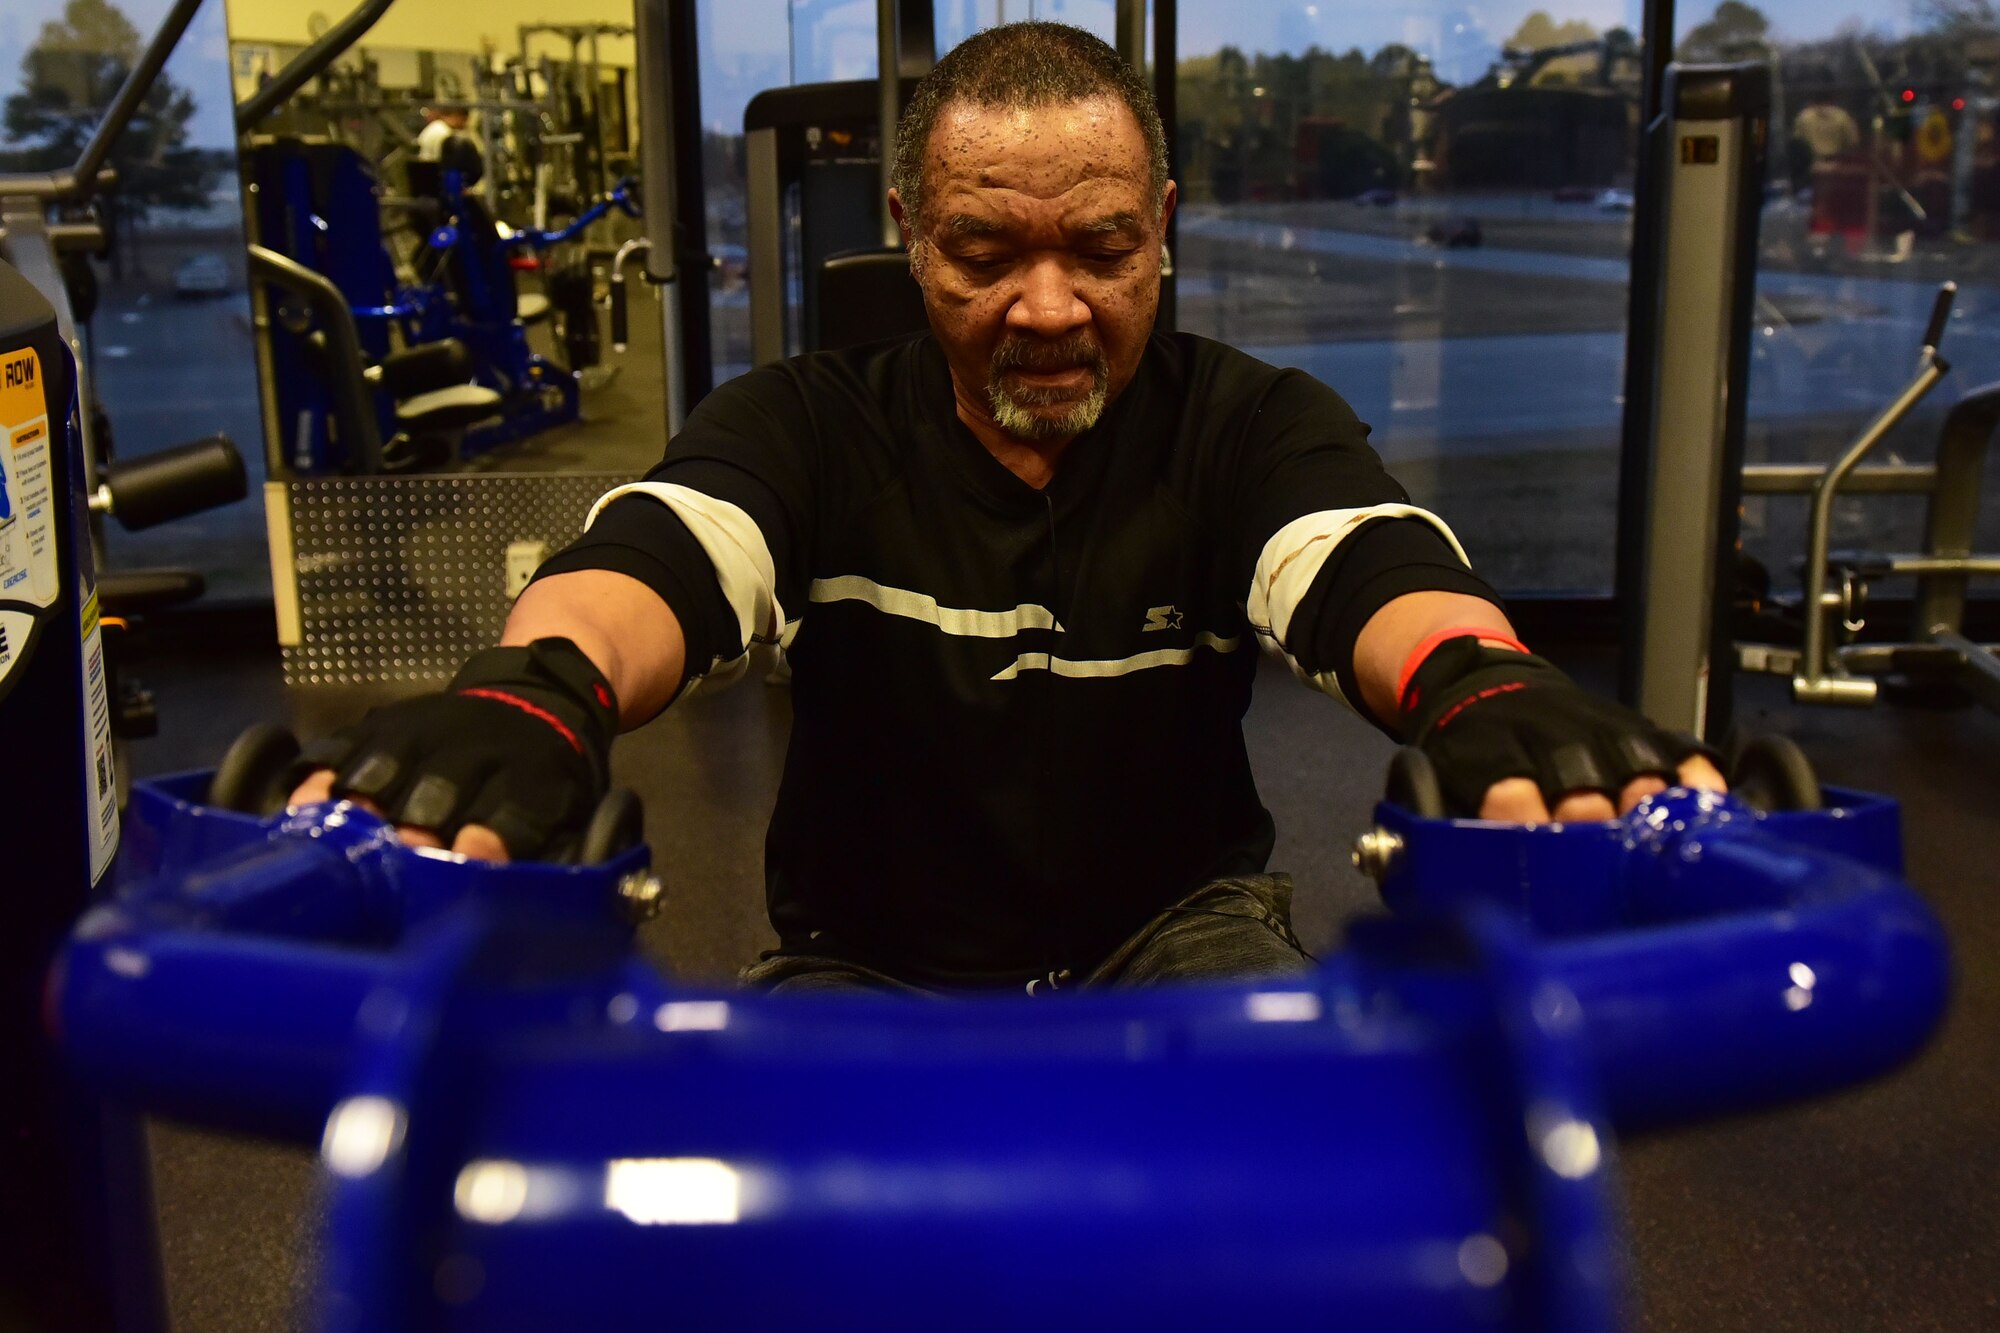 Man pulls weights on weight machine.